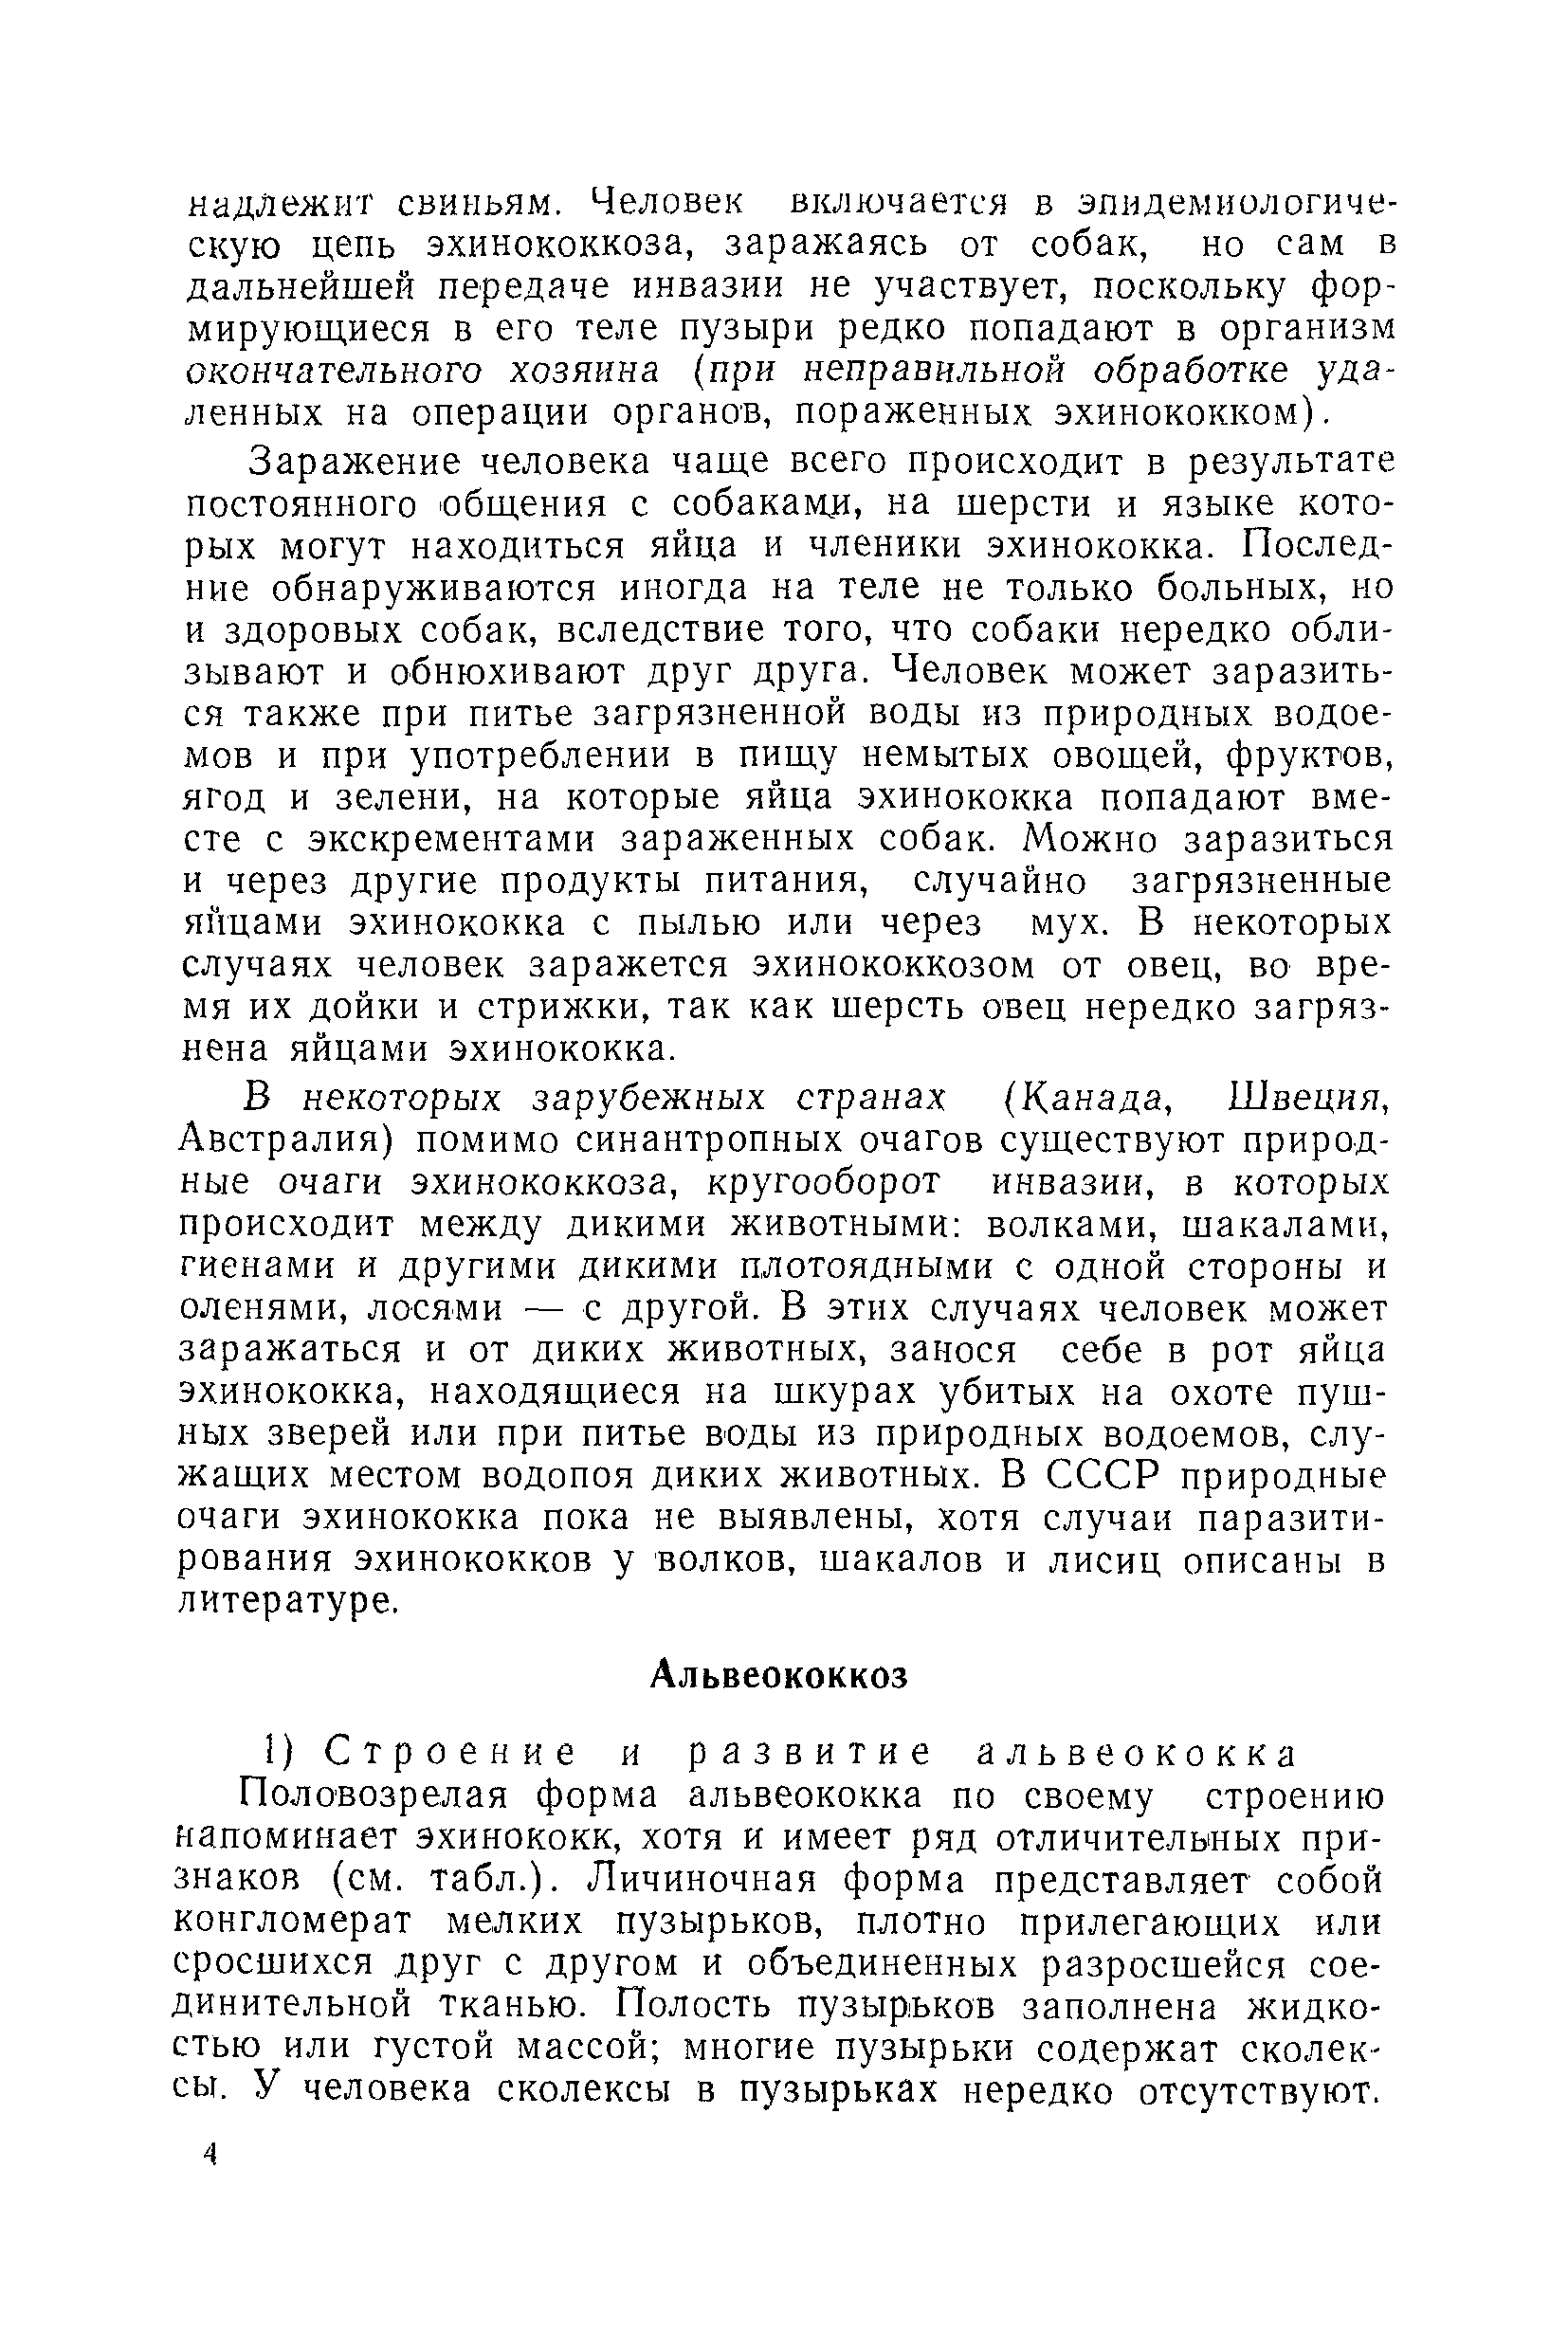 Методическое письмо 842-70